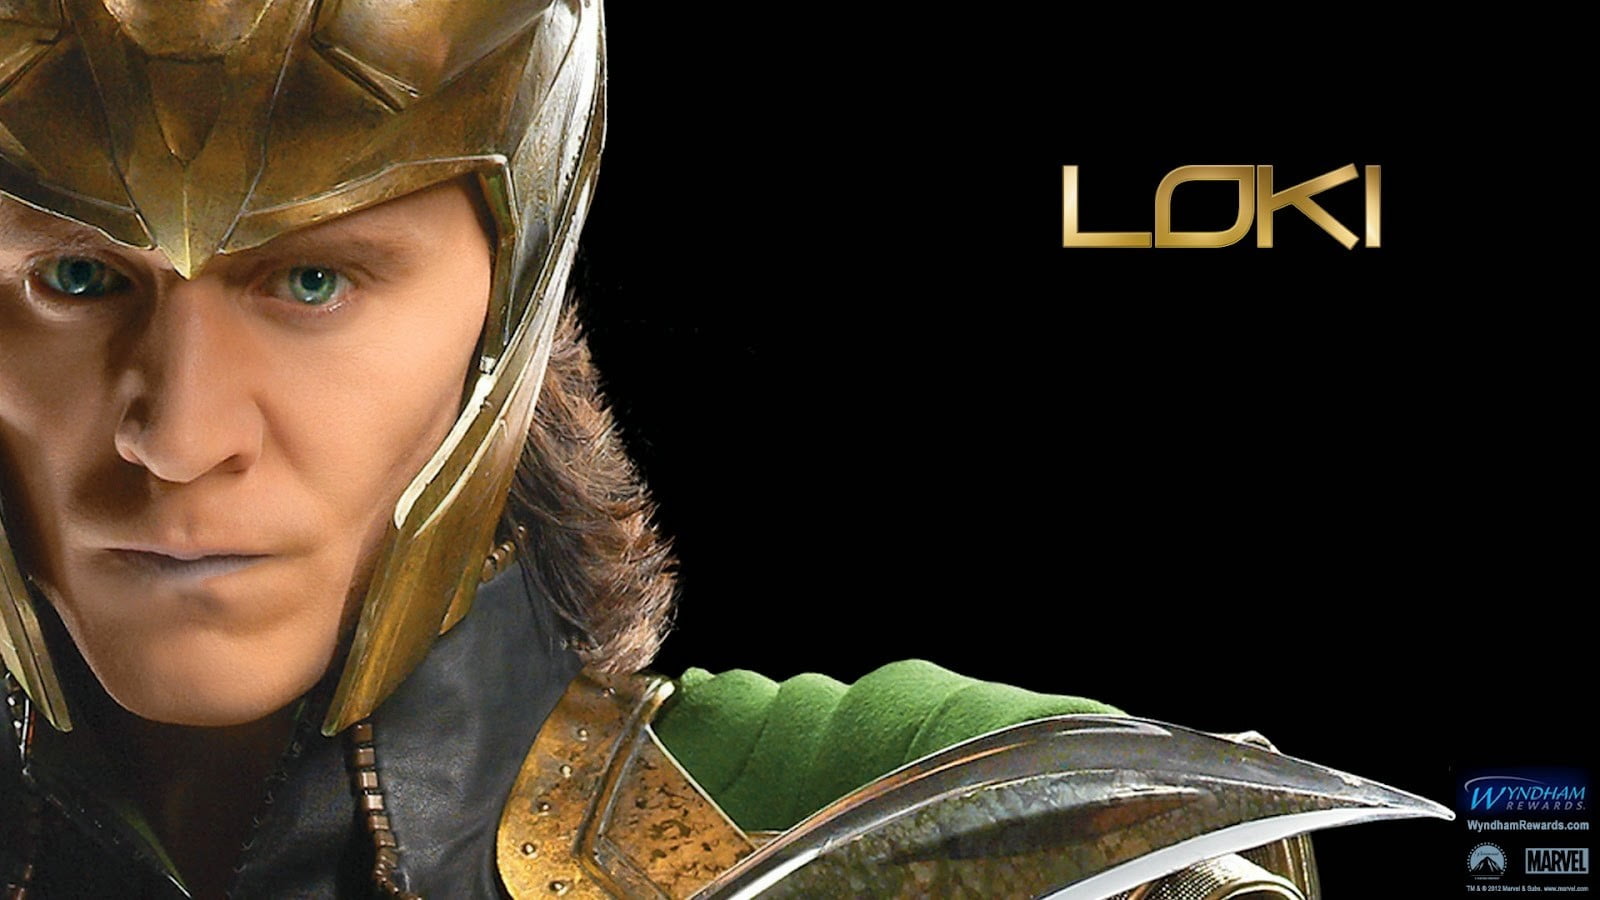 Marvel's Loki digital wallpaper, The Avengers, Marvel Comics